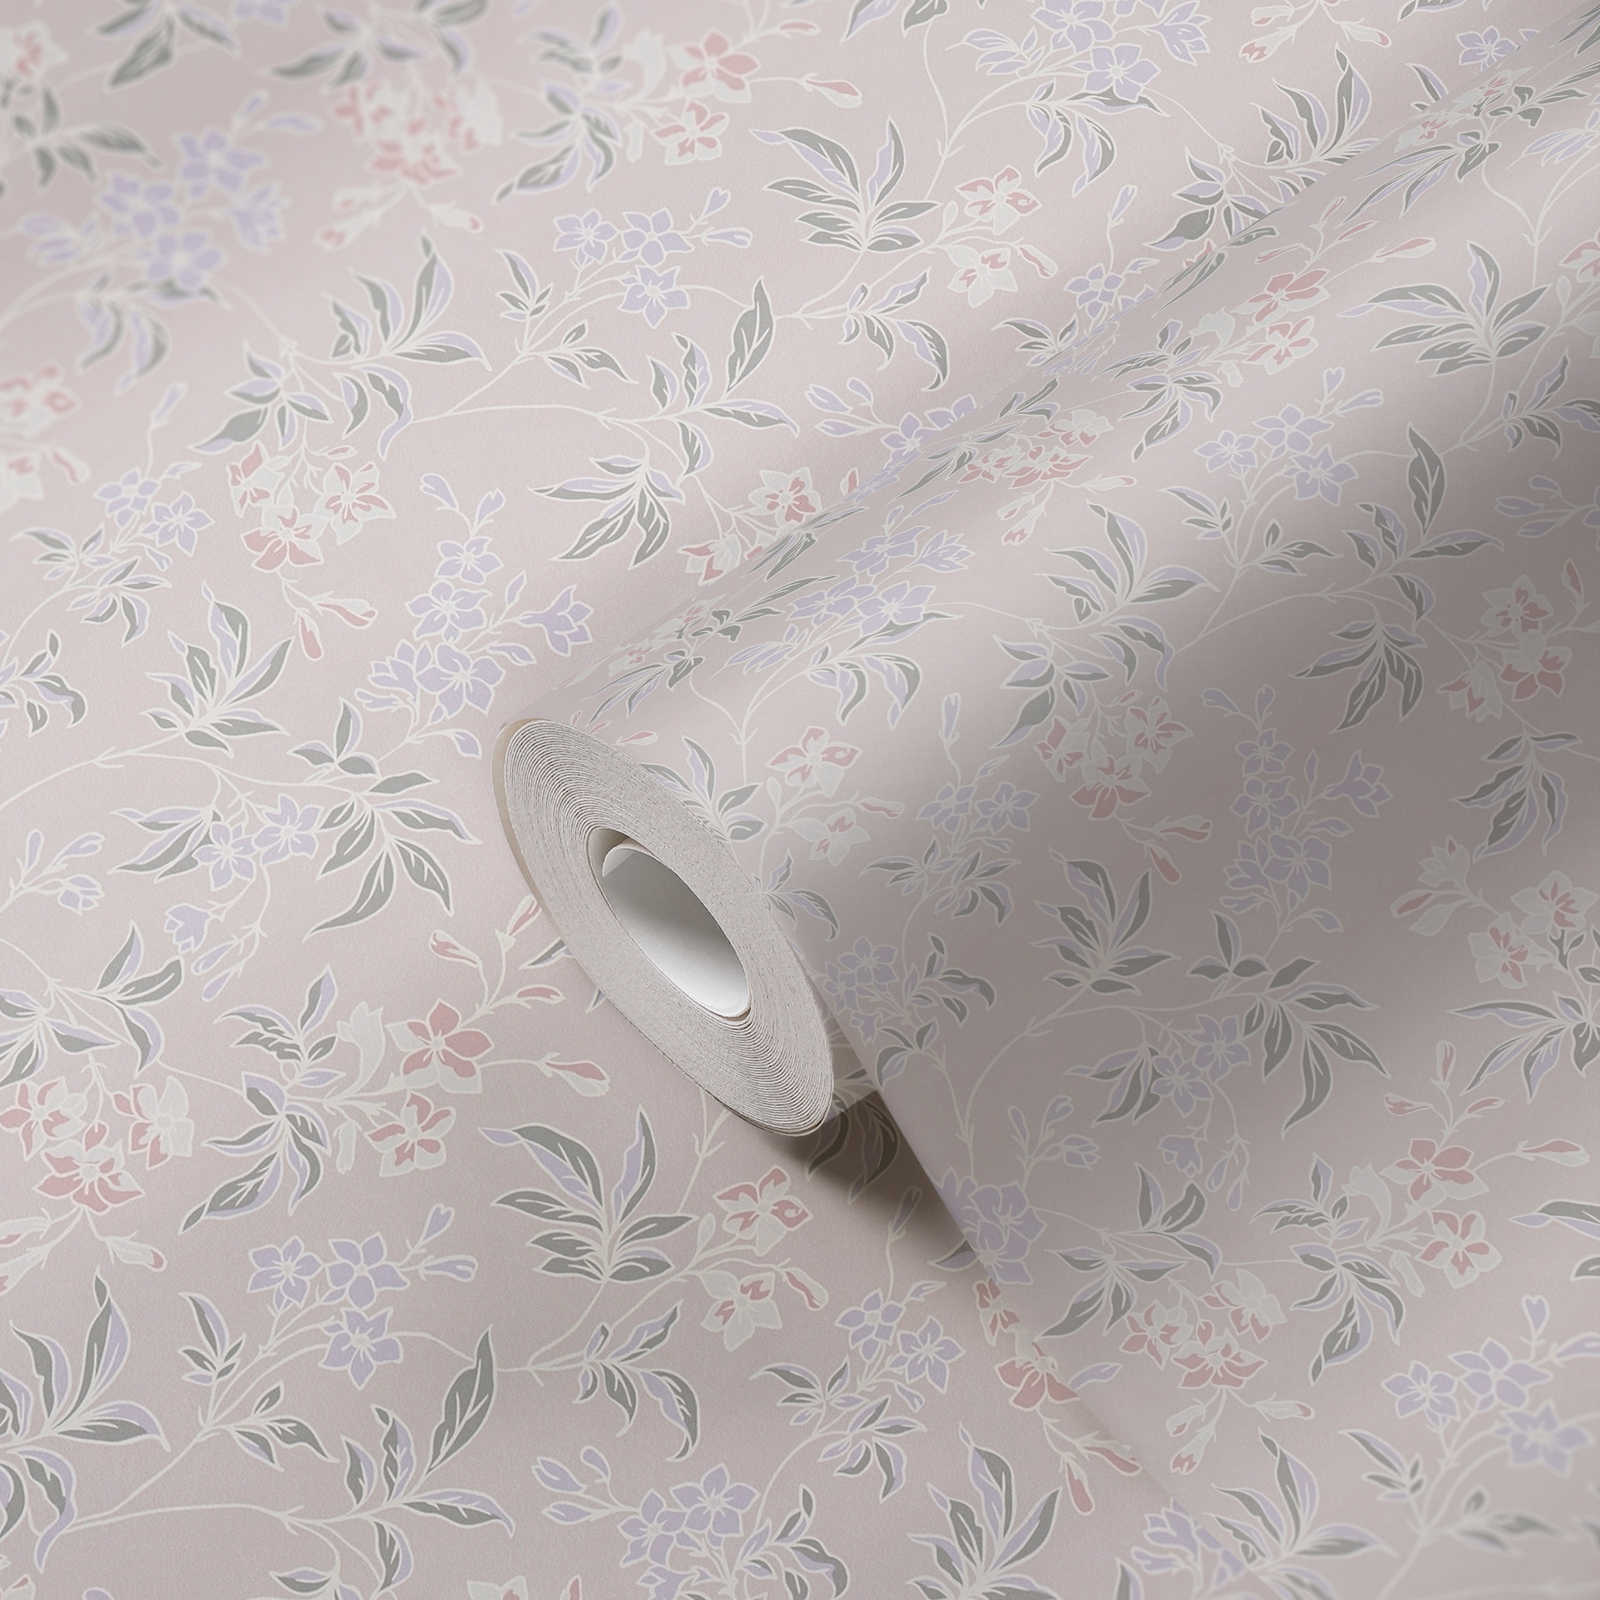             Carta da parati in tessuto non tessuto in stile inglese con motivi floreali - crema, rosa, viola
        